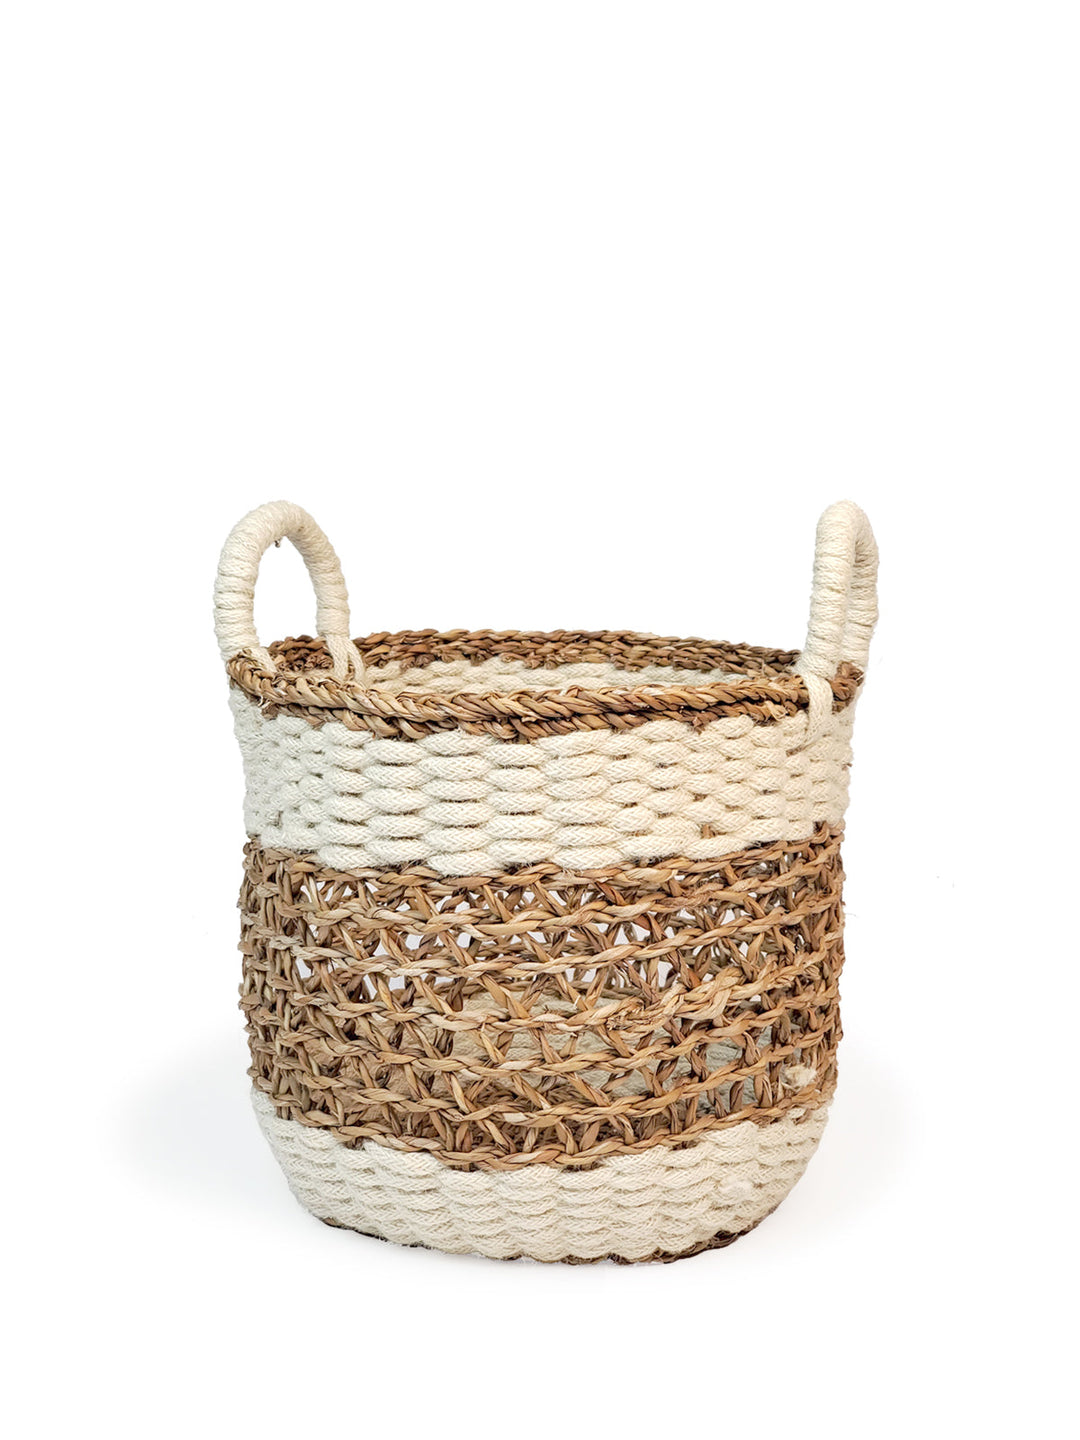 Ula Mesh Basket - Natural Hand Made -6